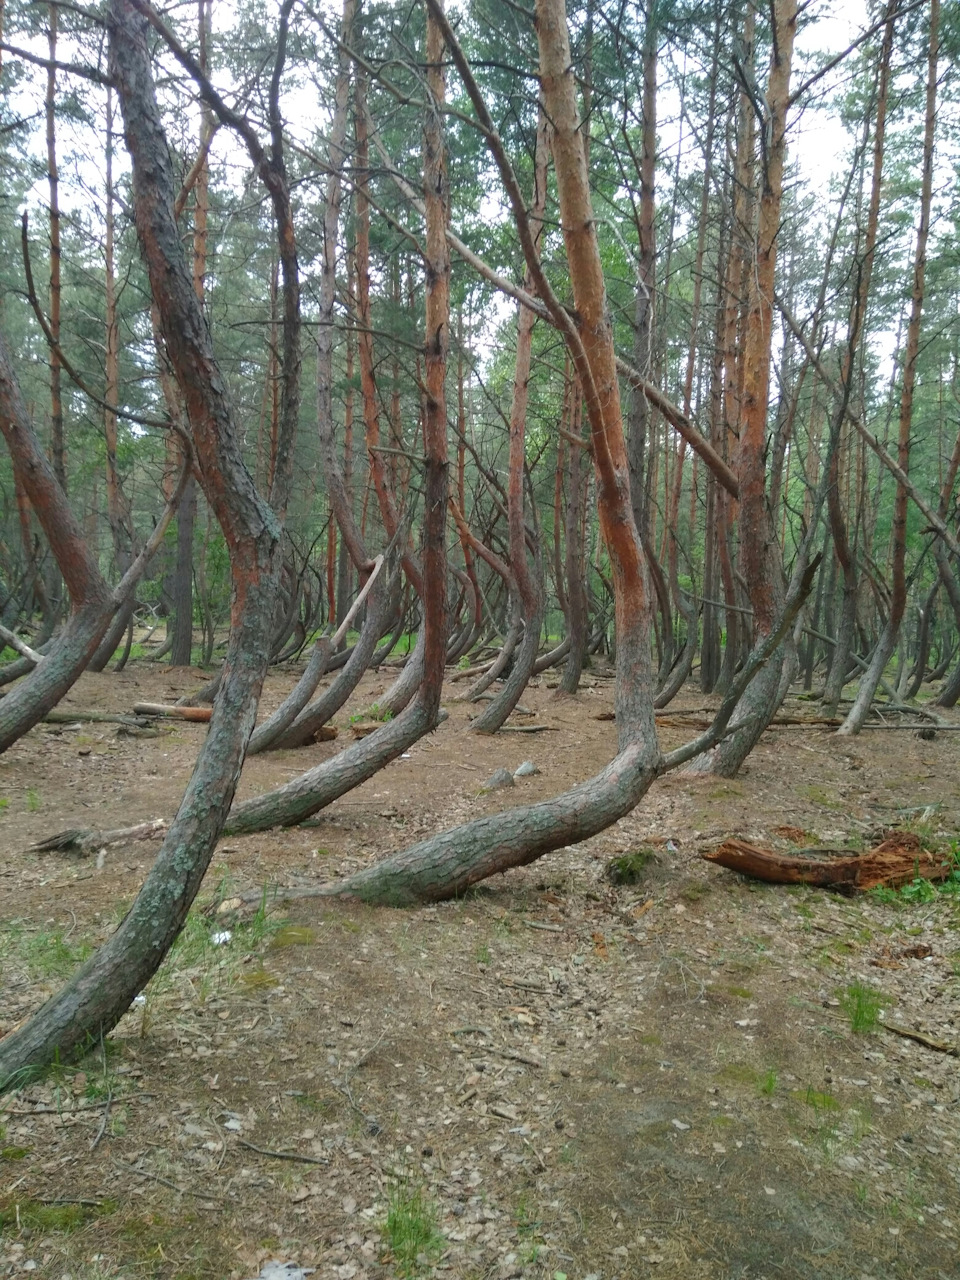 Шилово пьяный лес Рязанской области